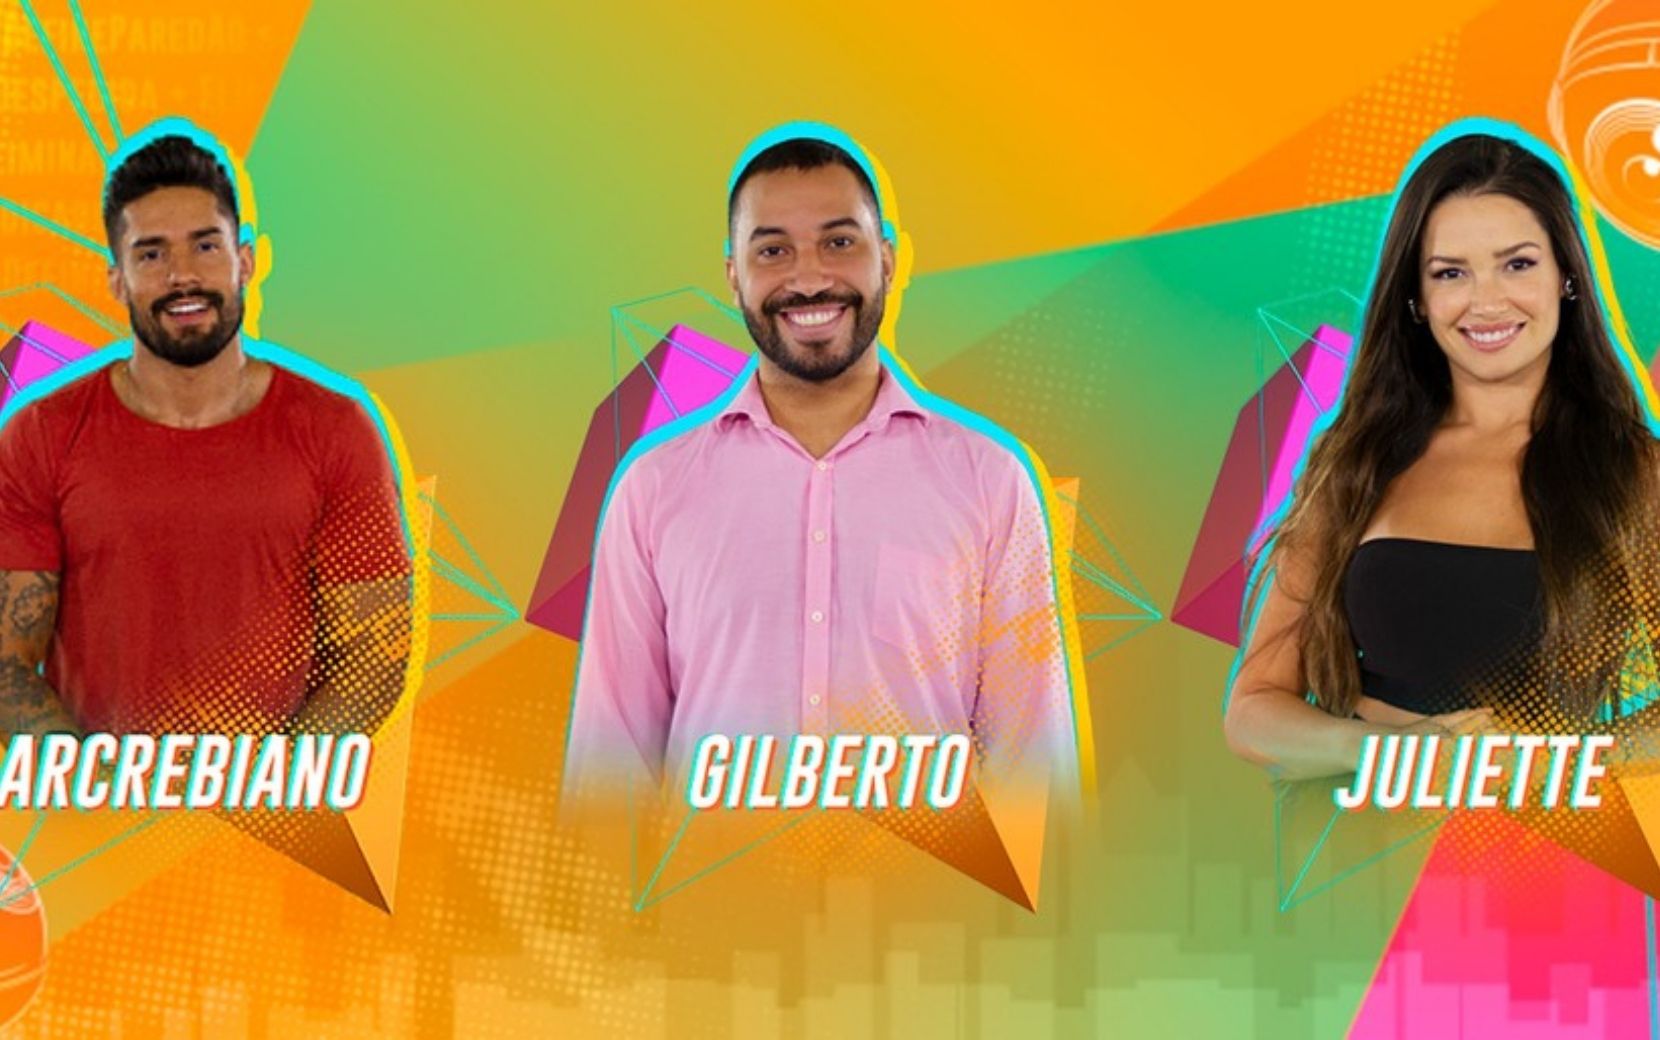 Arcrebiano, Gilberto ou Juliette? Quem deve ser eliminado do BBB21?